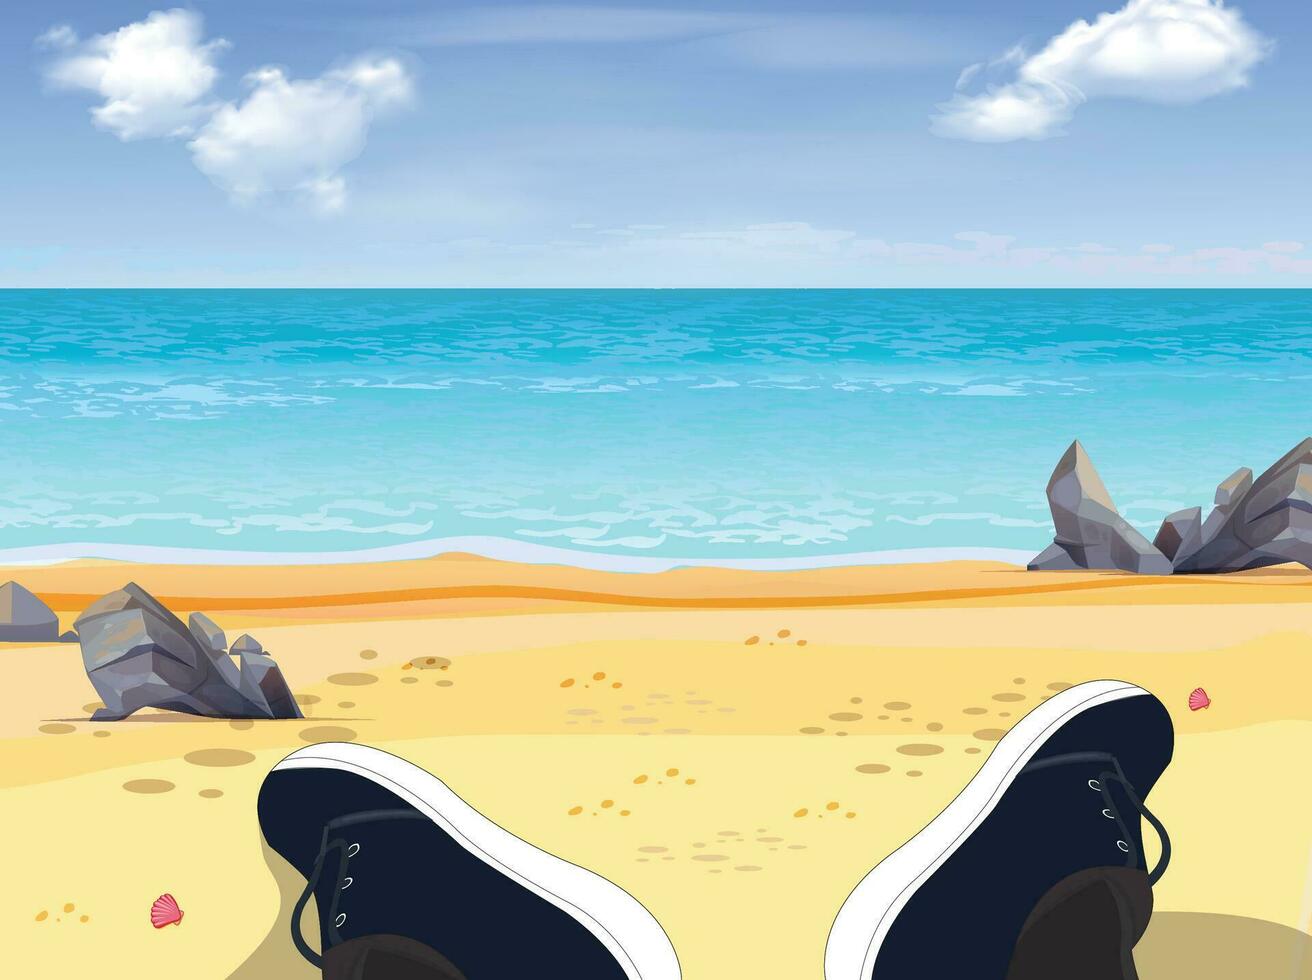 un hombre sentado en un playa, cielo y Dom a mar fondo, Oceano y playa vector isla paisaje vacío plano Arte. Oceano o mar agua con olas y nubes en cielo, verano azul marina con nublado cielo